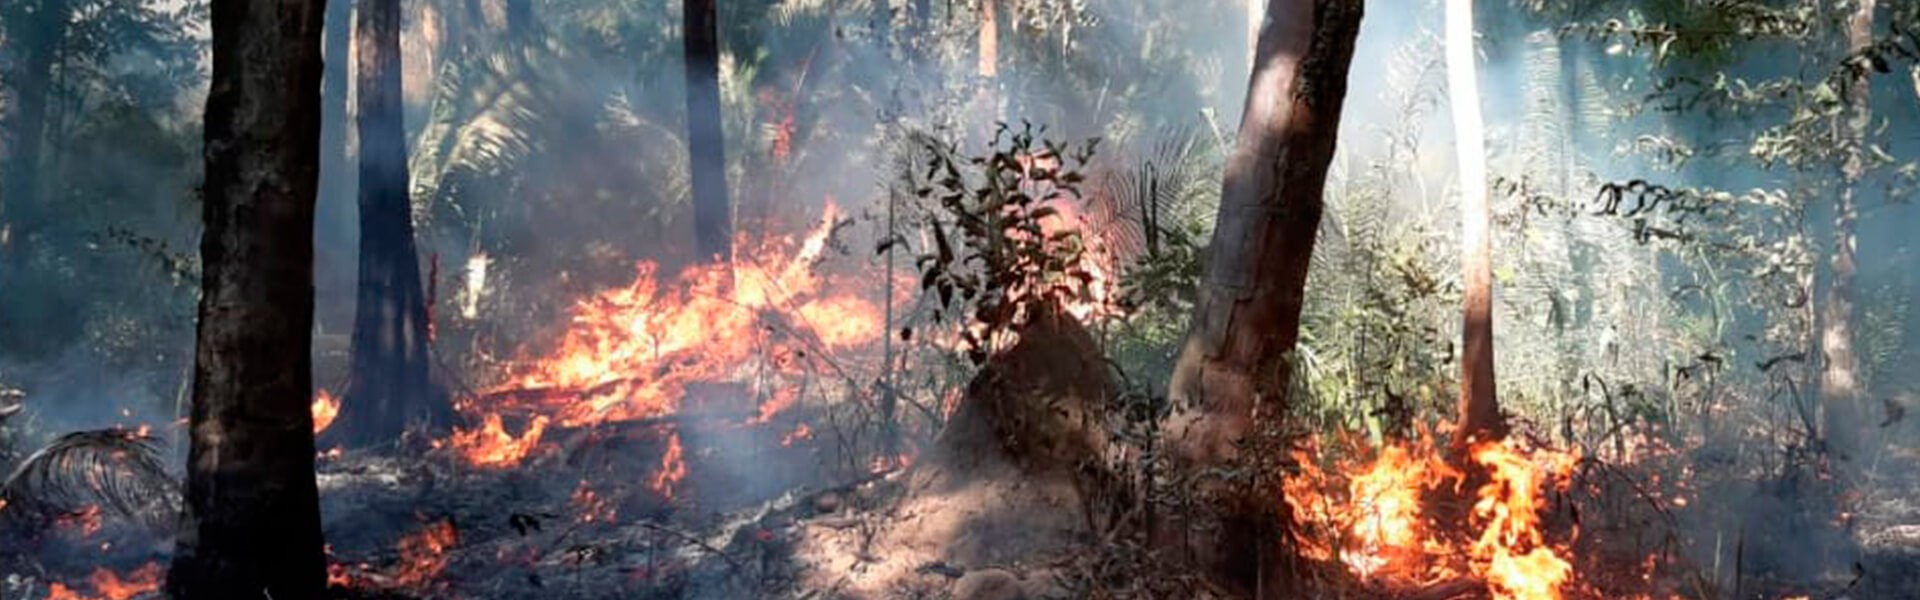 Incêndios no Pantanal